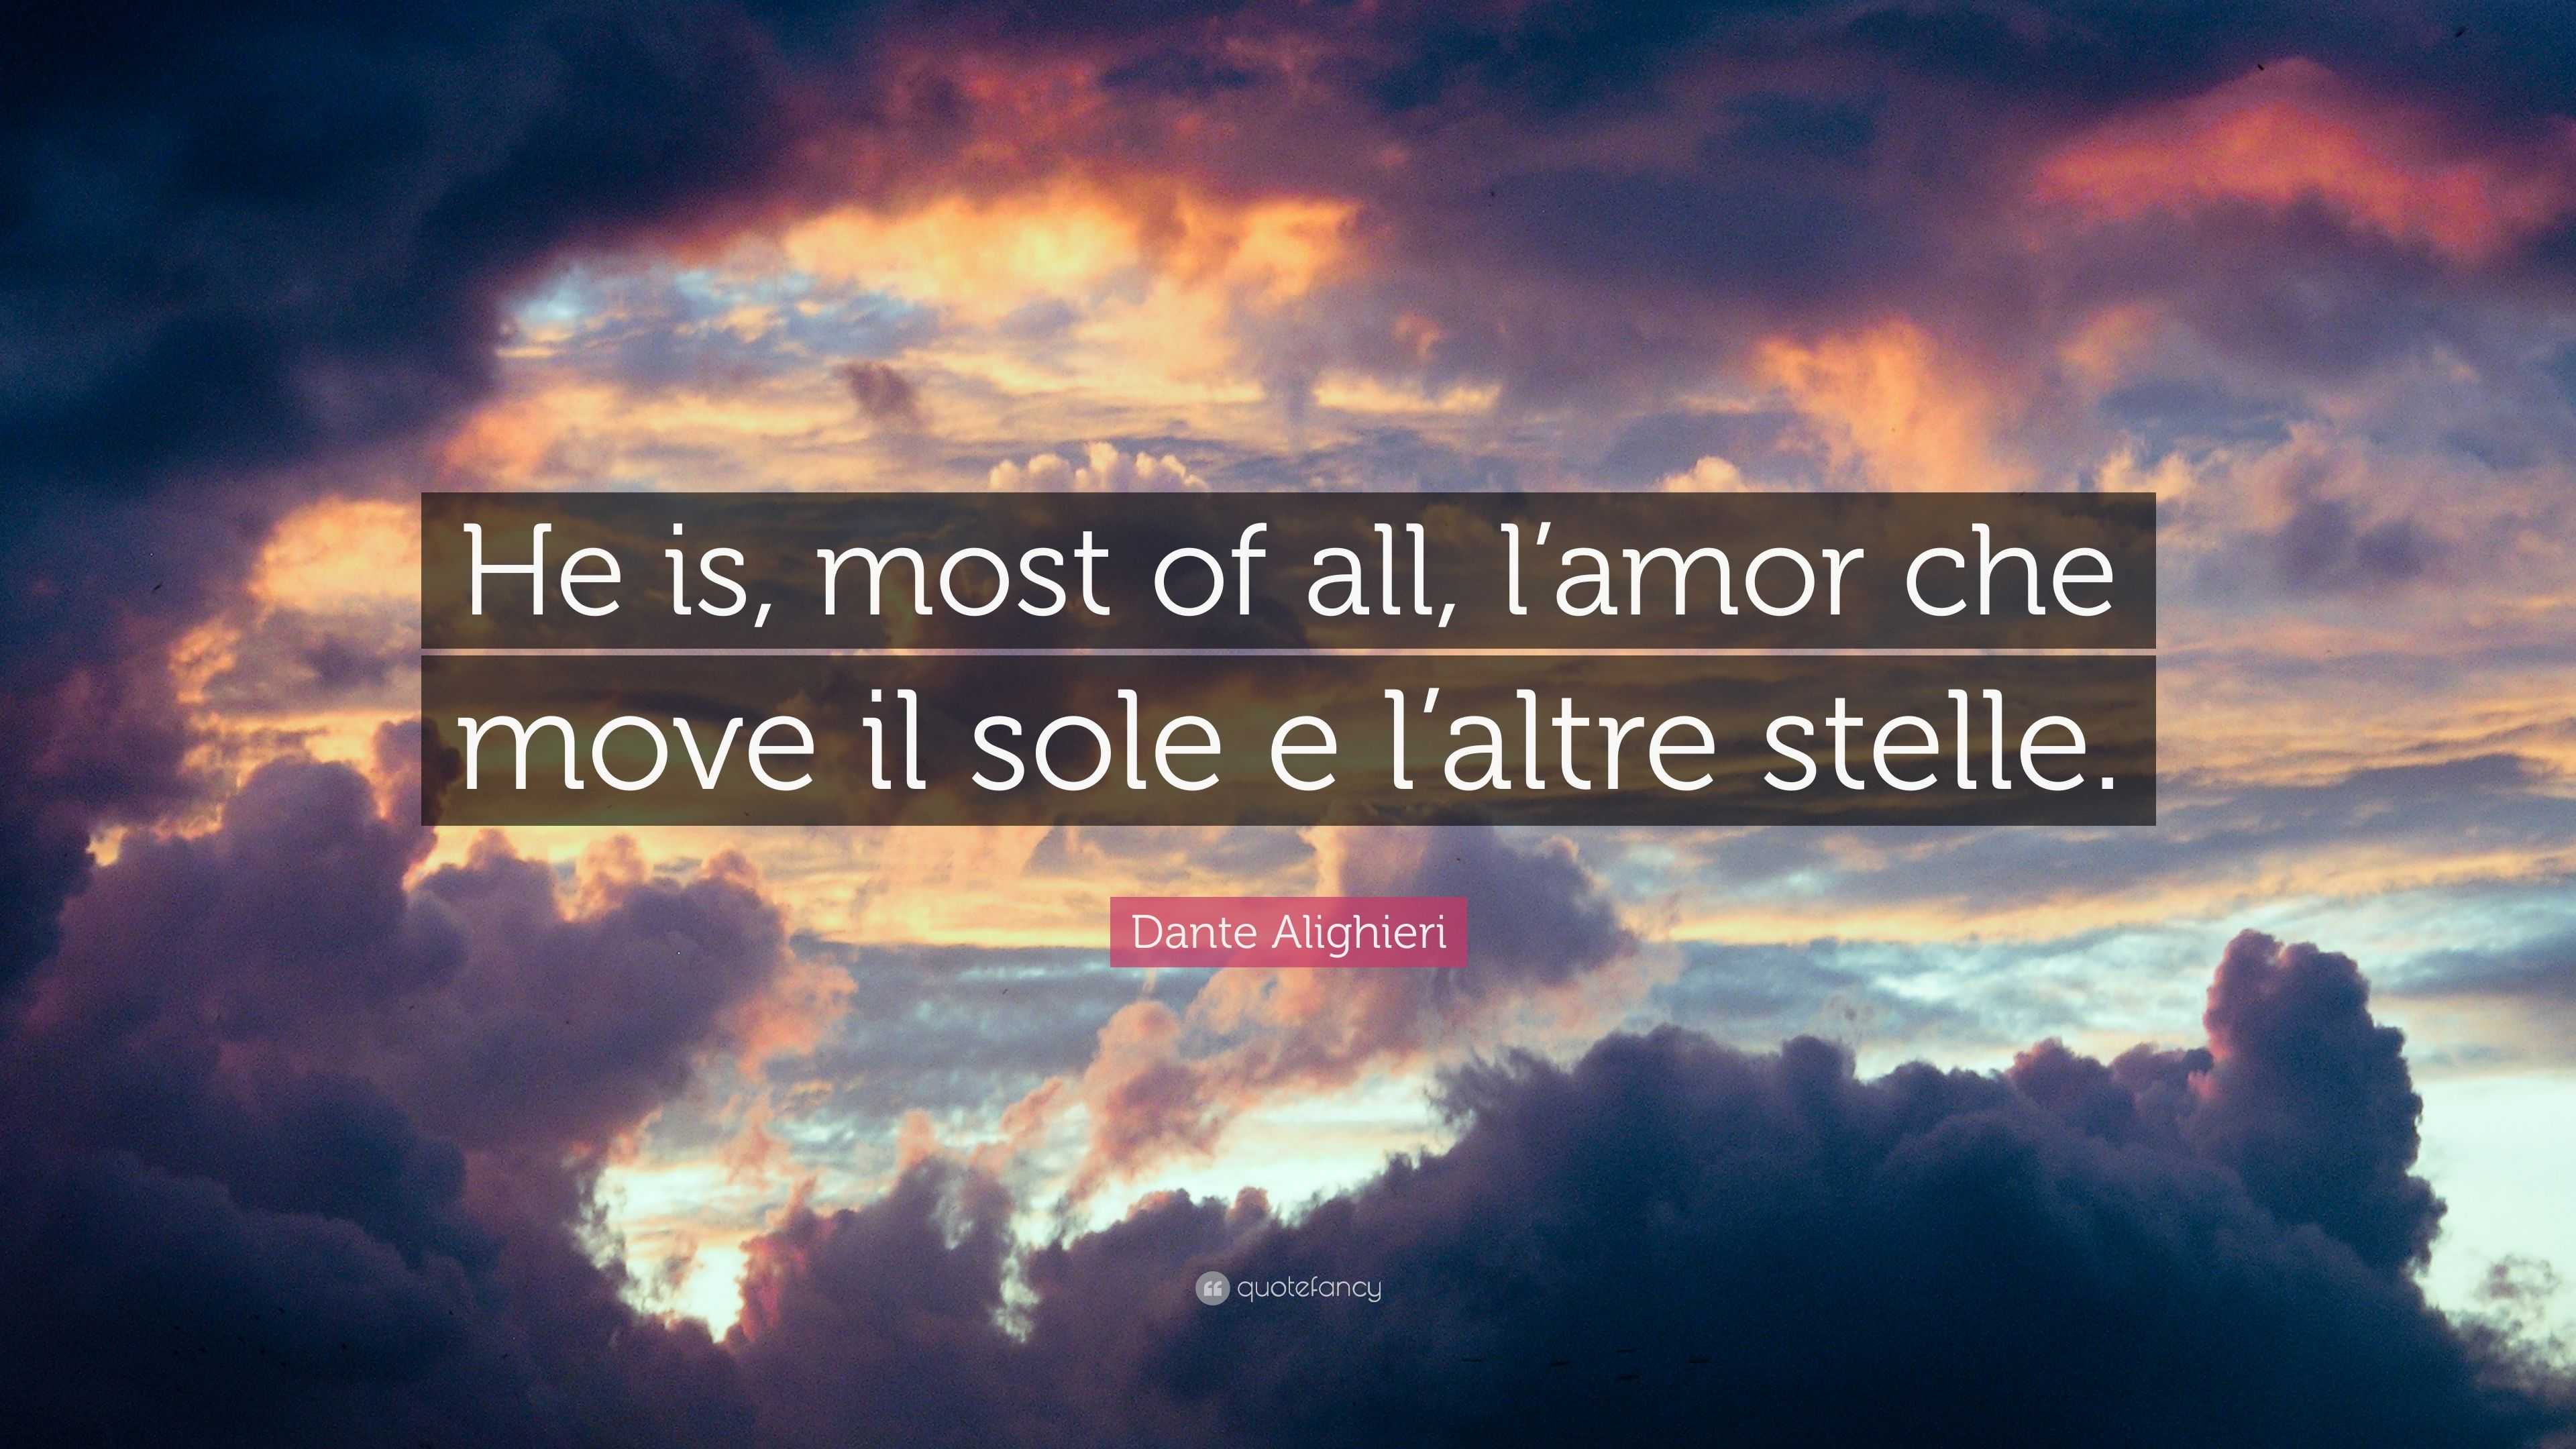 Dante Alighieri Quote: “He is, most of all, l’amor che move il sole e l ...